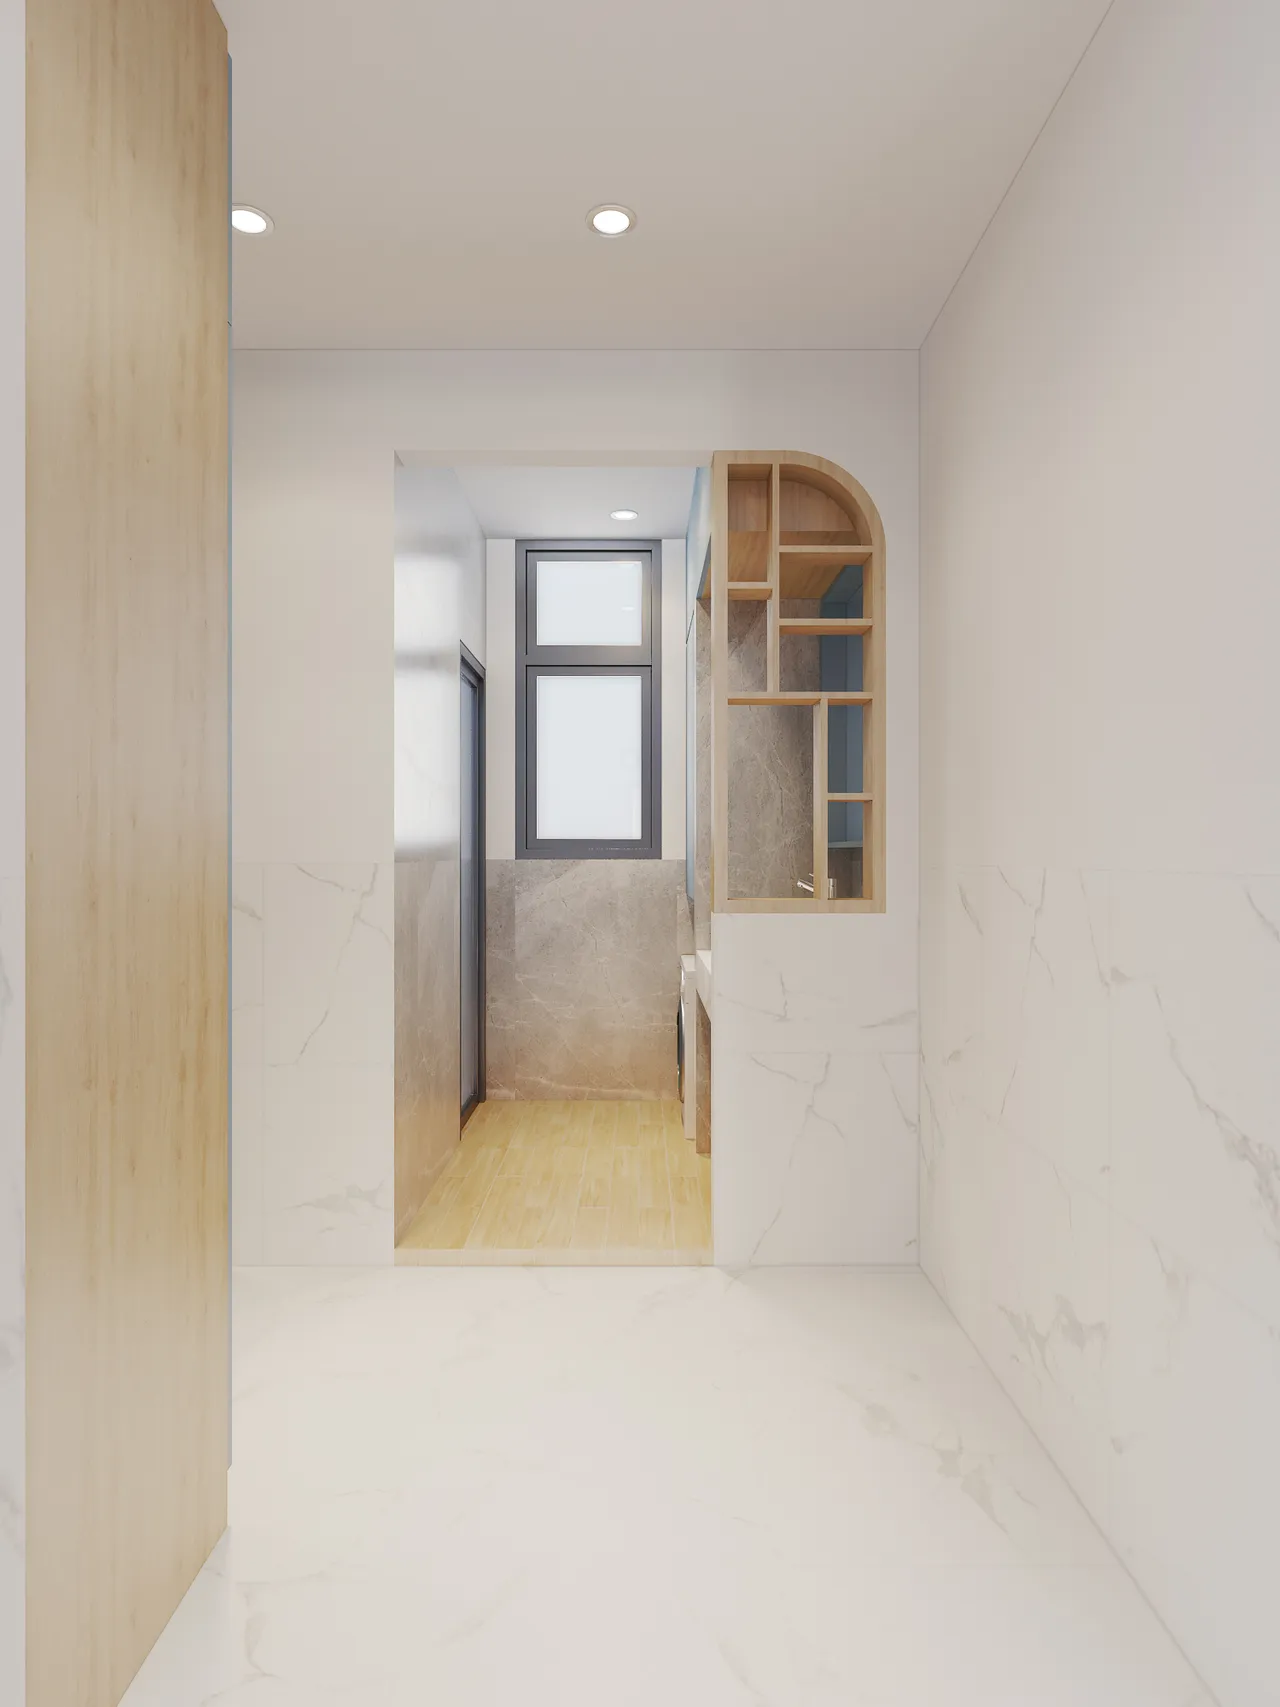 Concept nội thất phòng giặt Nhà phố Ngã 4 Bình Phước phong cách hiện đại Modern